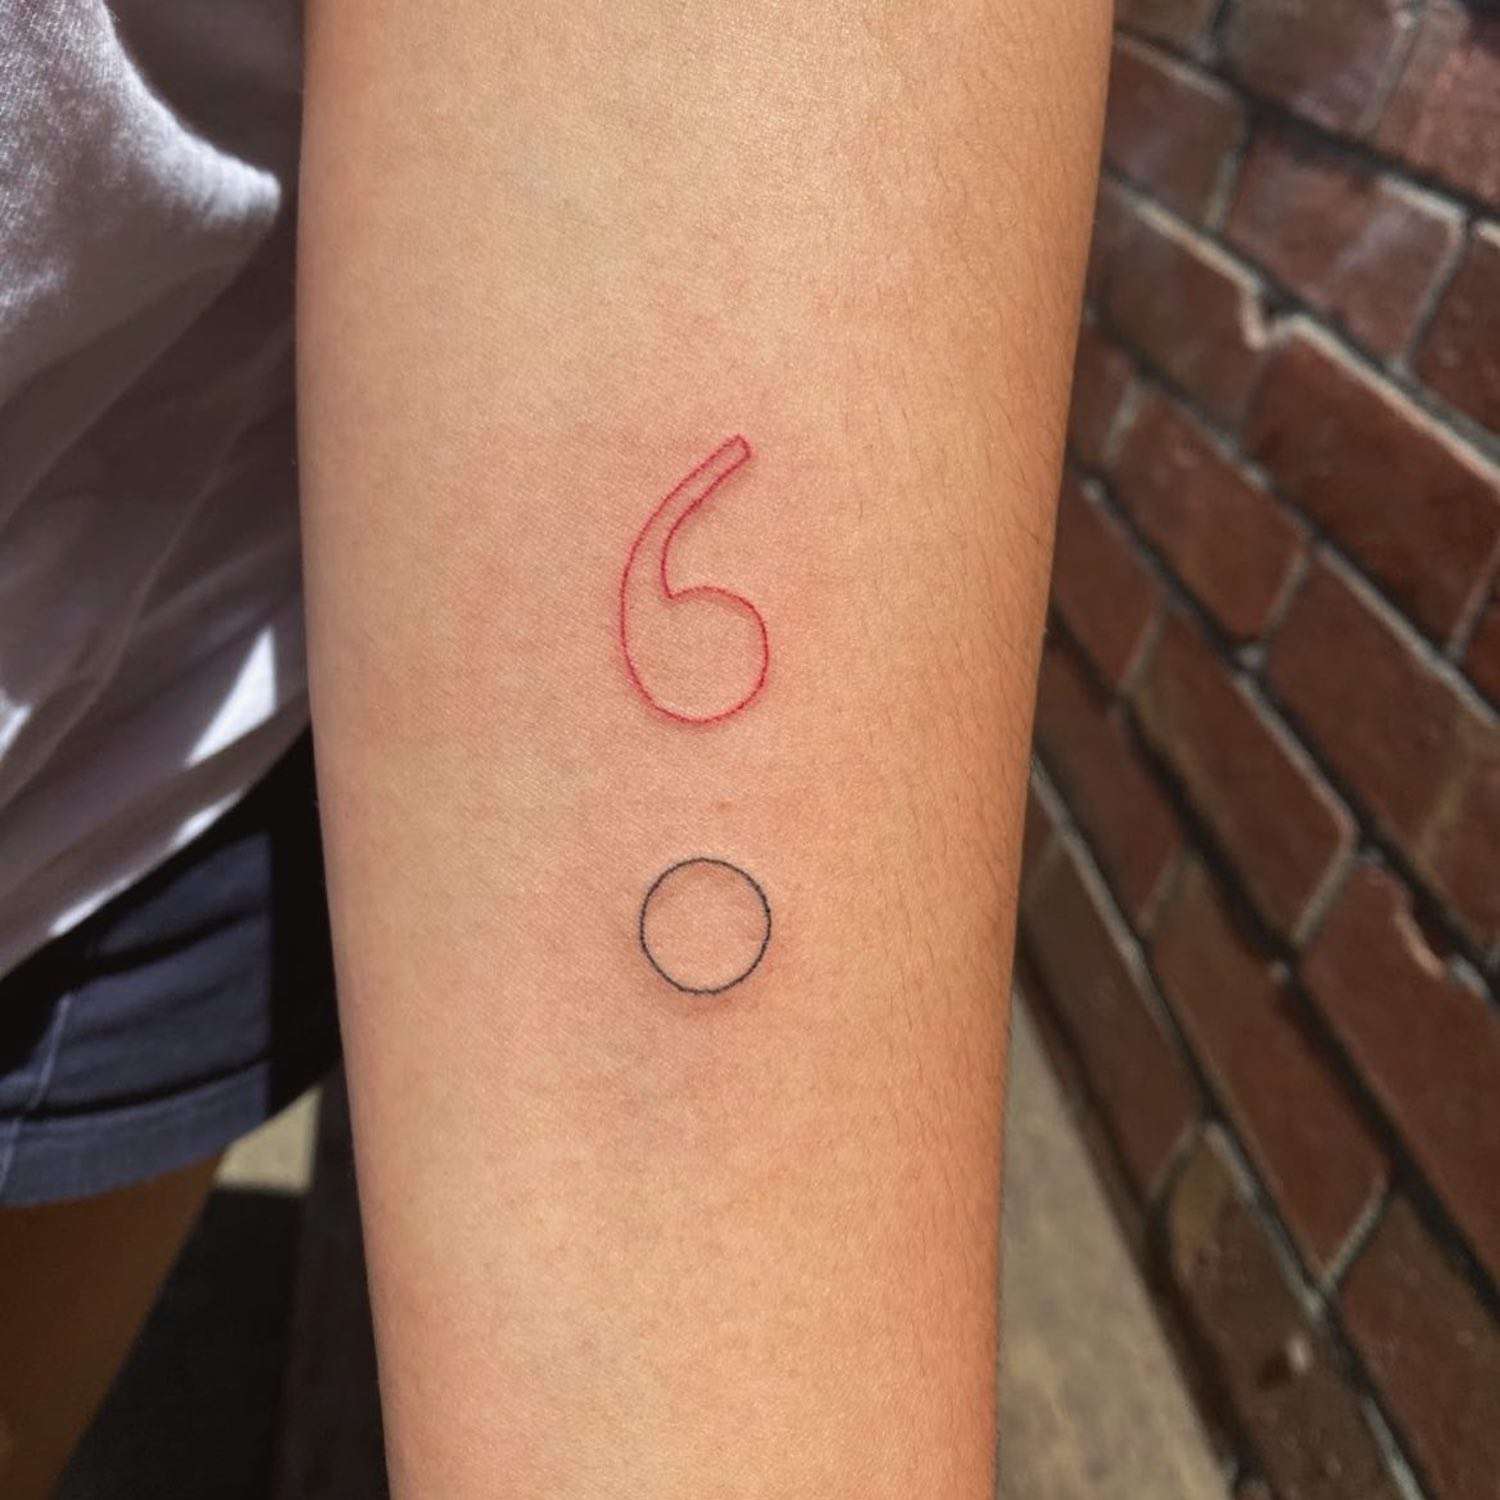 Mão com uma tatuagem vermelha e preta fina na forma de um ponto com uma vírgula